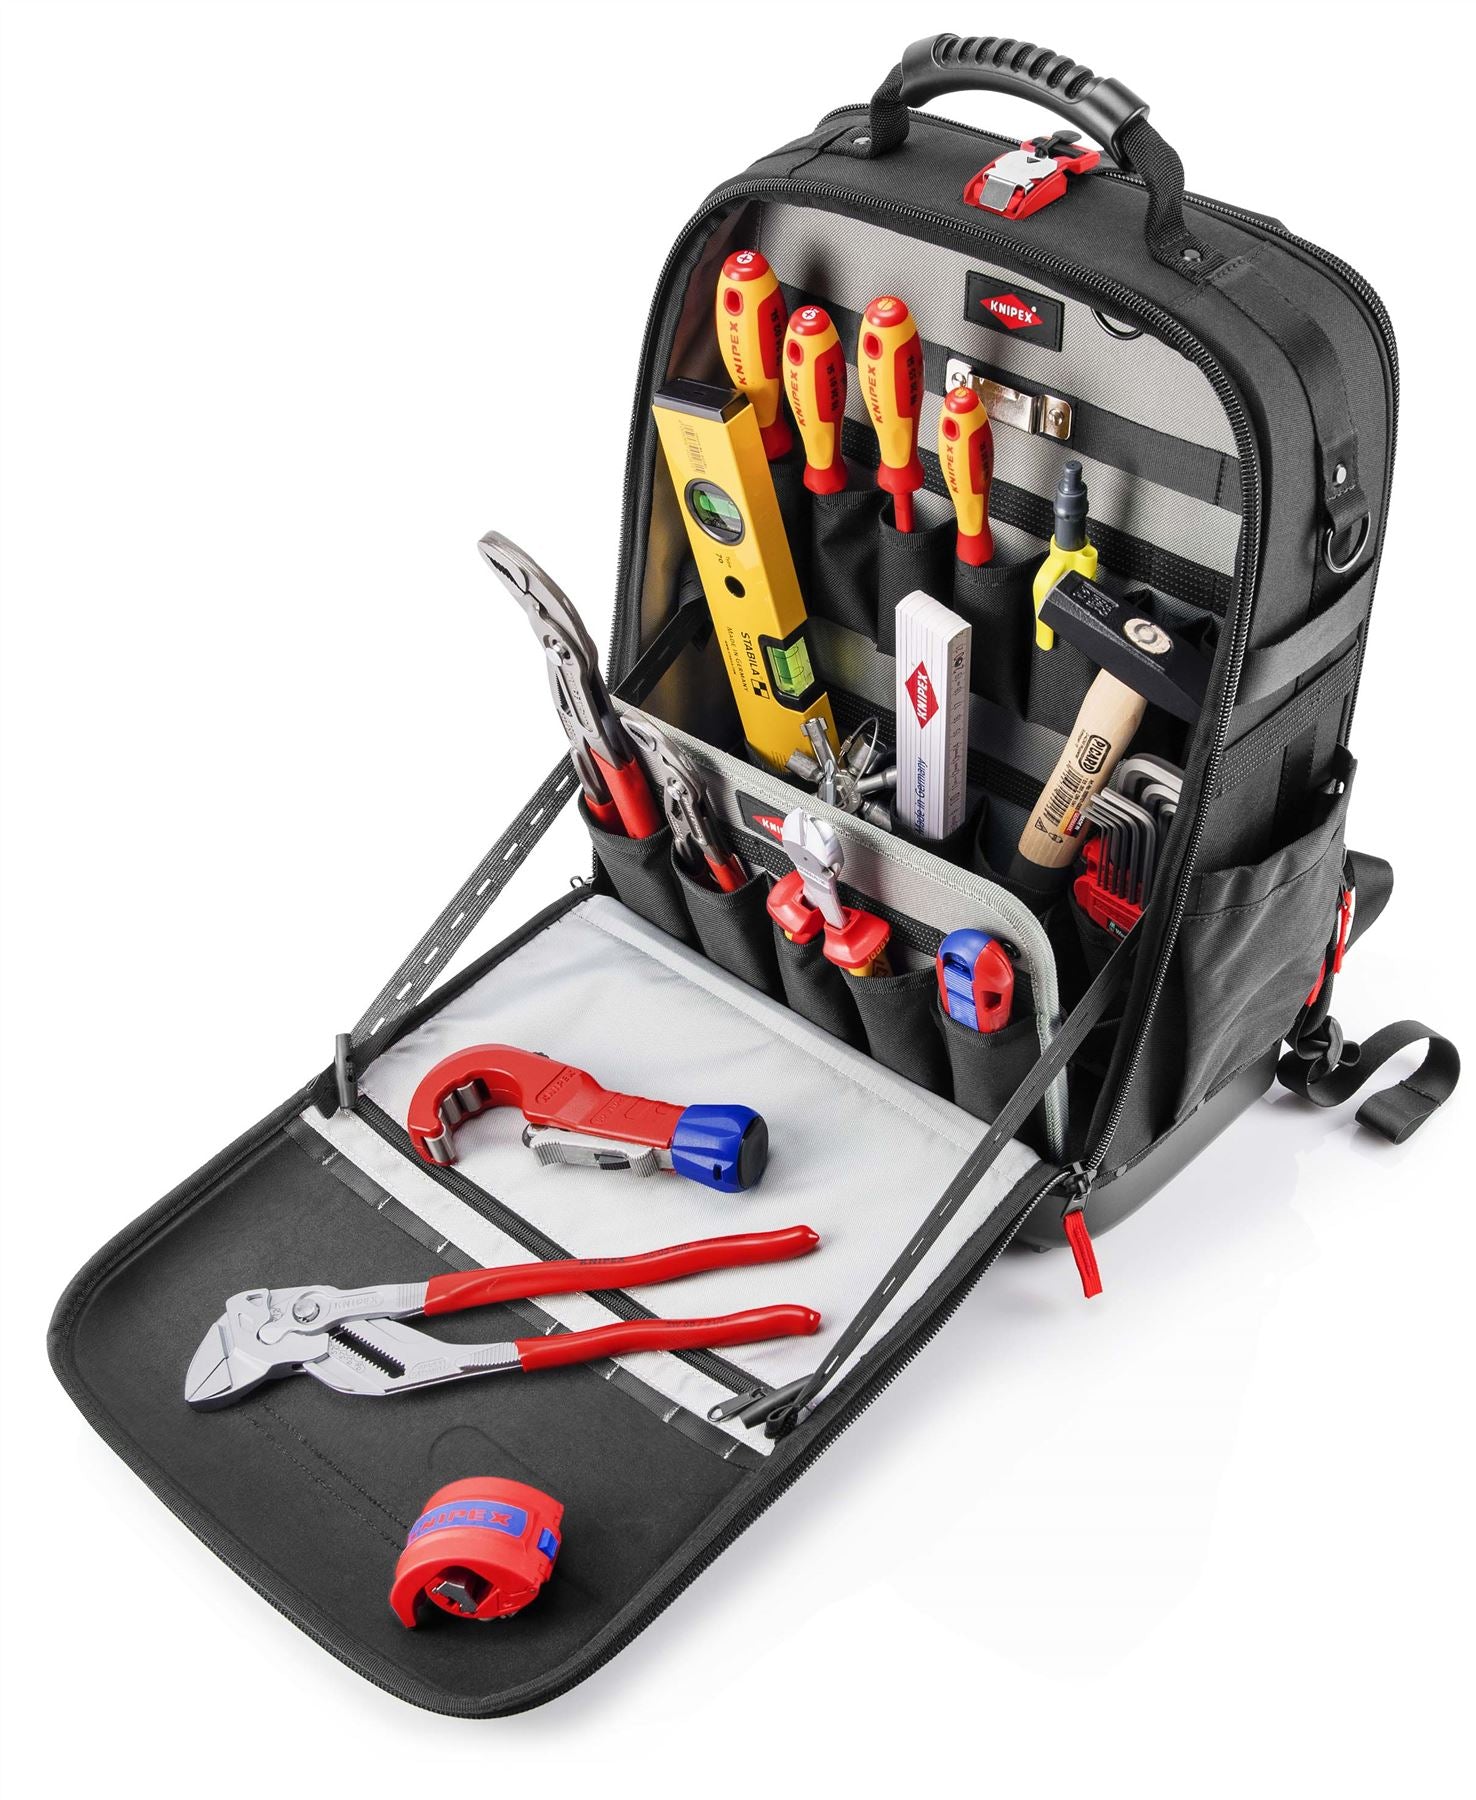 Knipex Tool Backpack Bag Modular X18 Plumbing 17 Piece Kit 00 21 50 S